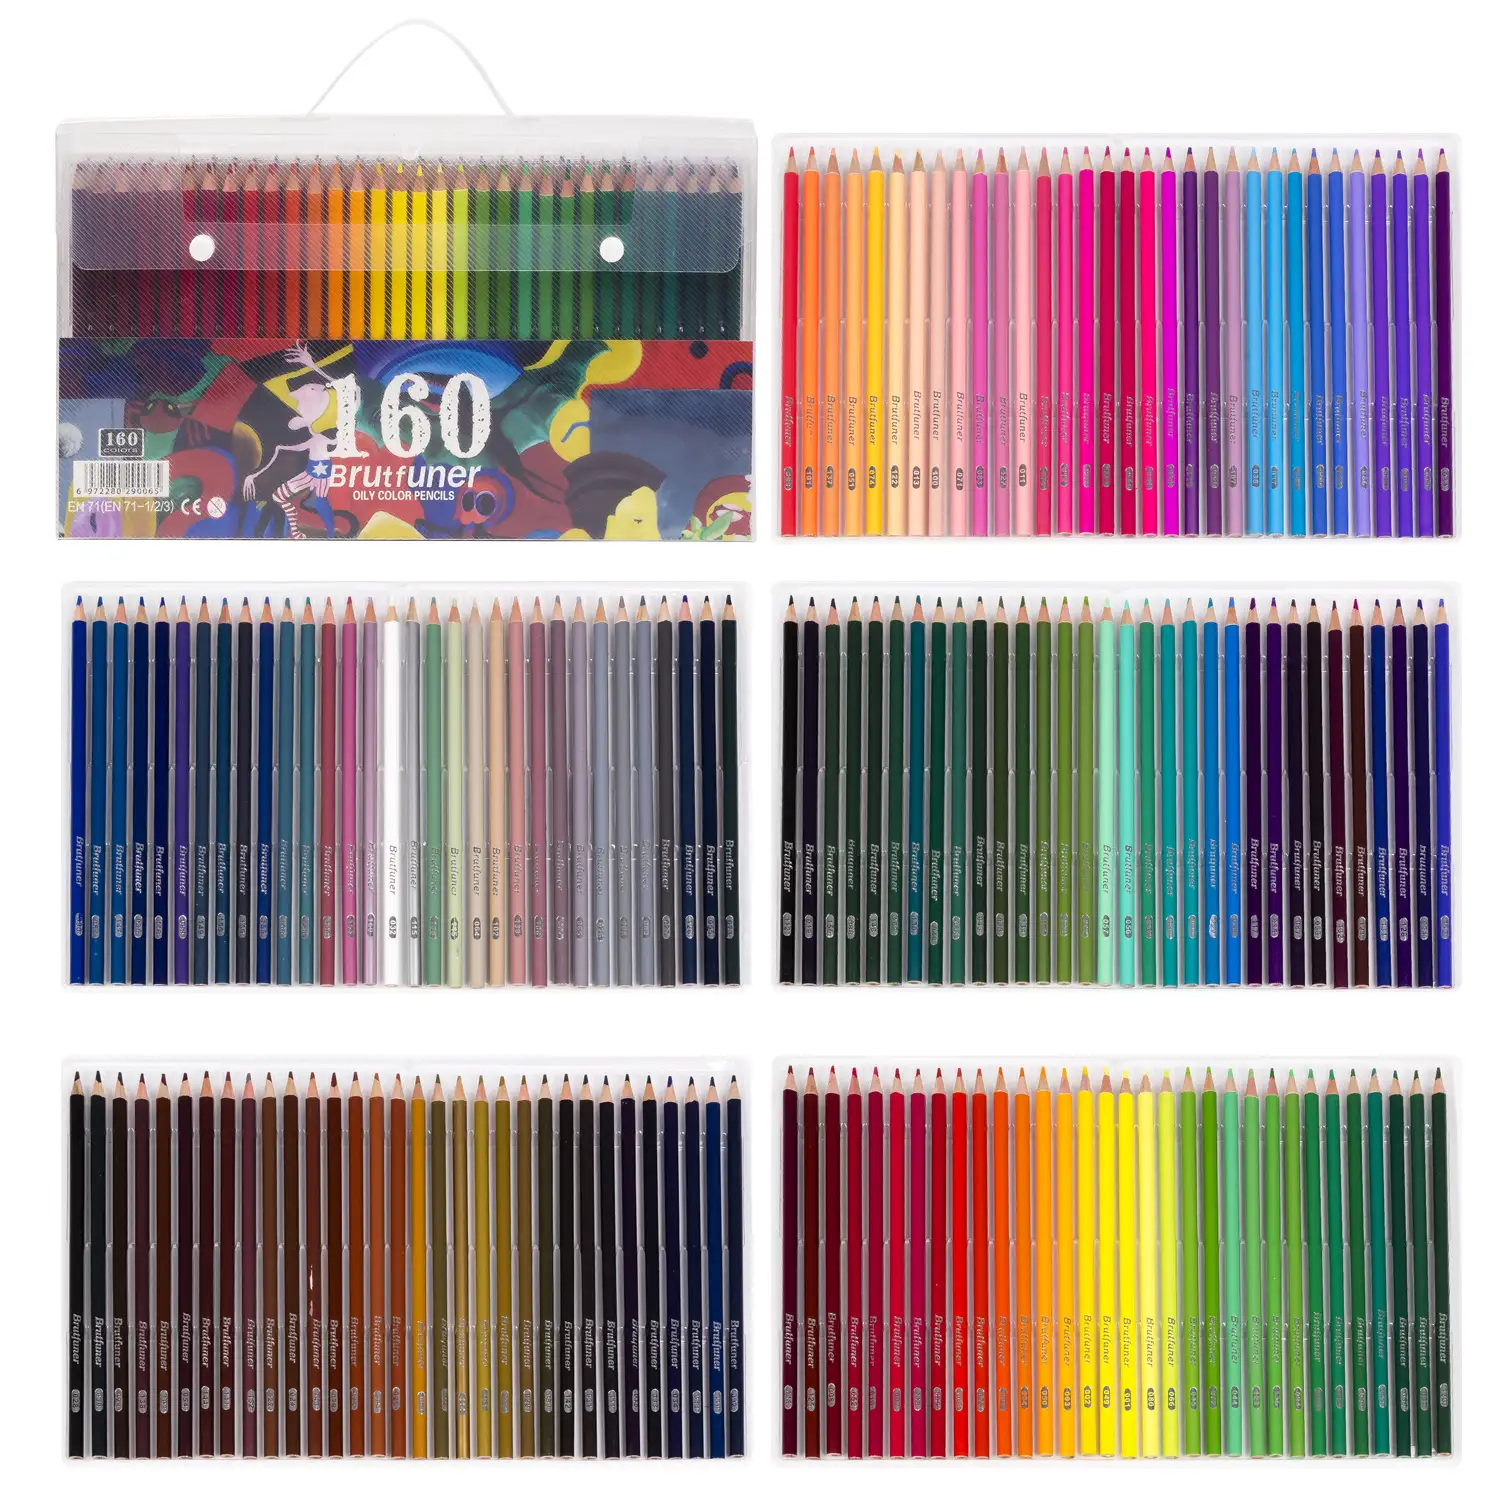 Set de 160 lápices de colores con base de aceite.